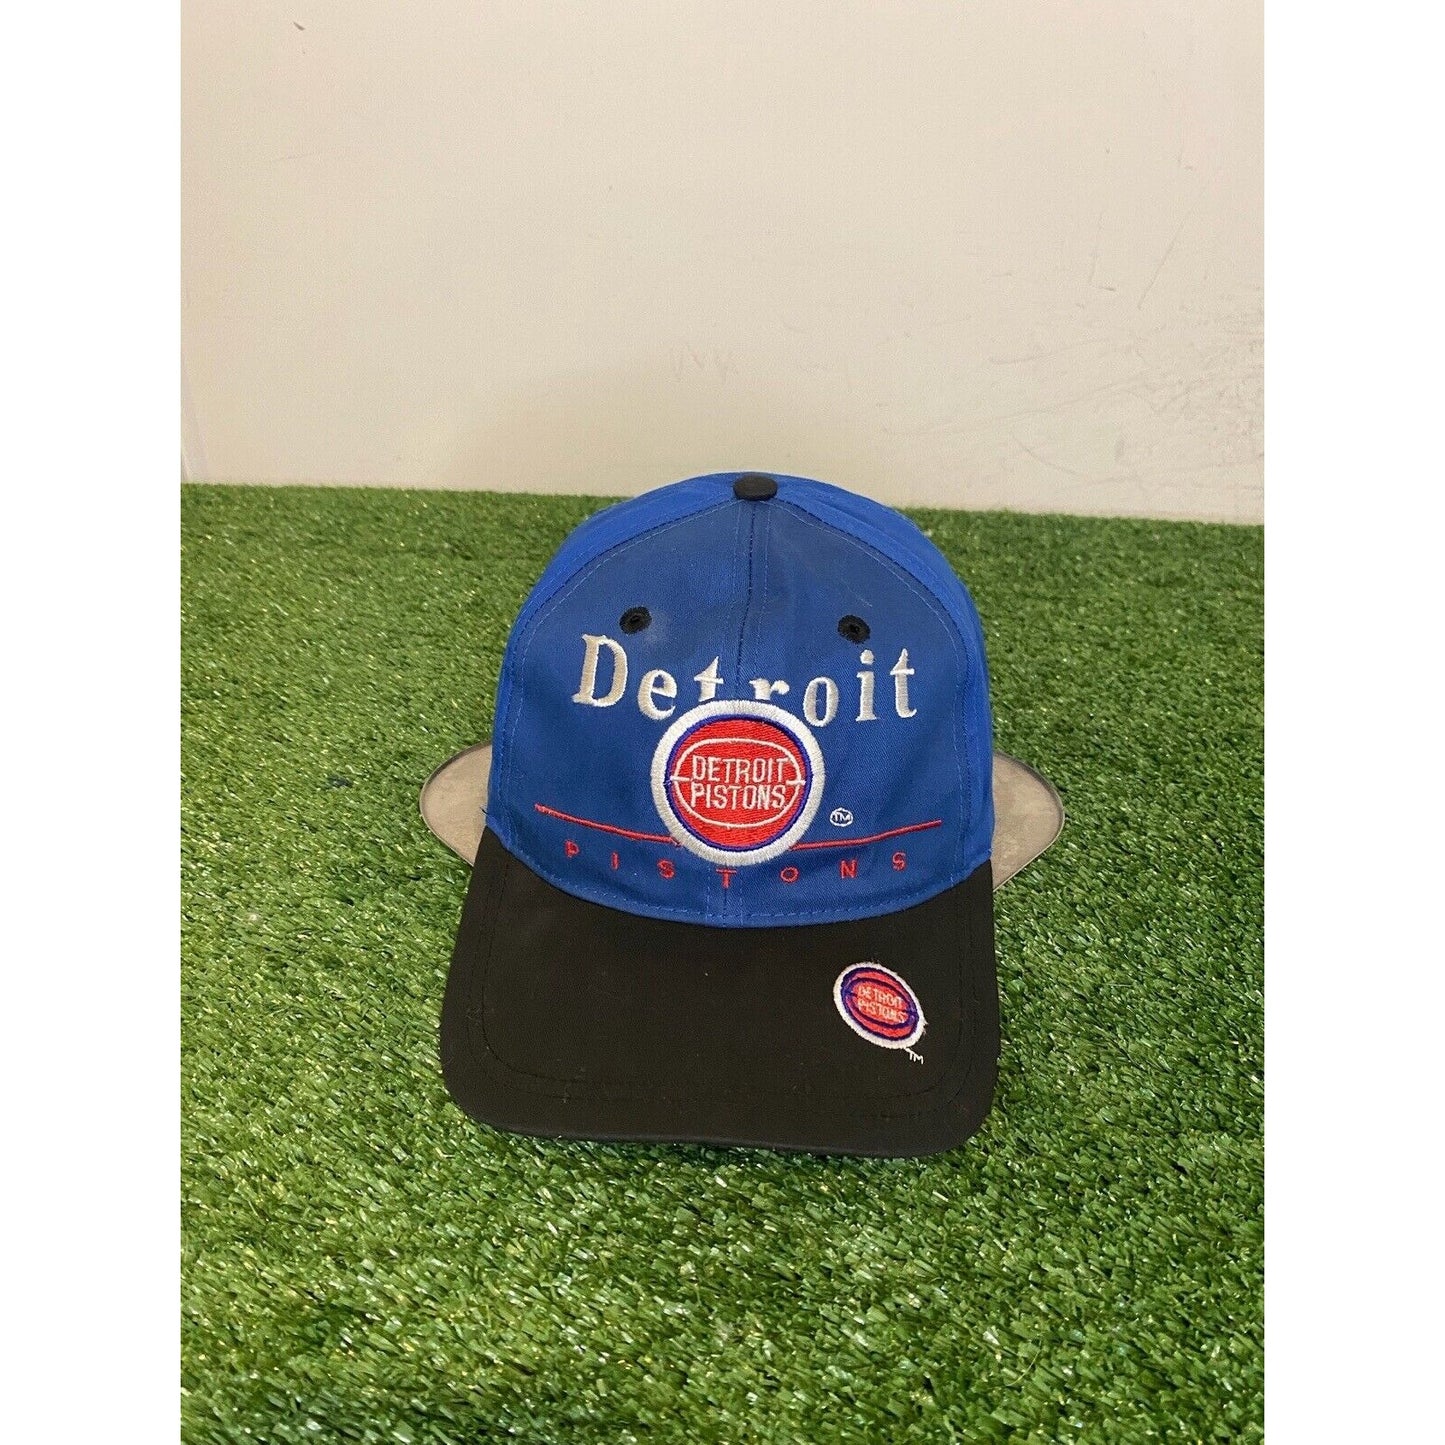 Vintage Detroit Pistons hat cap snap back blue black mens Twins enterprise 90s